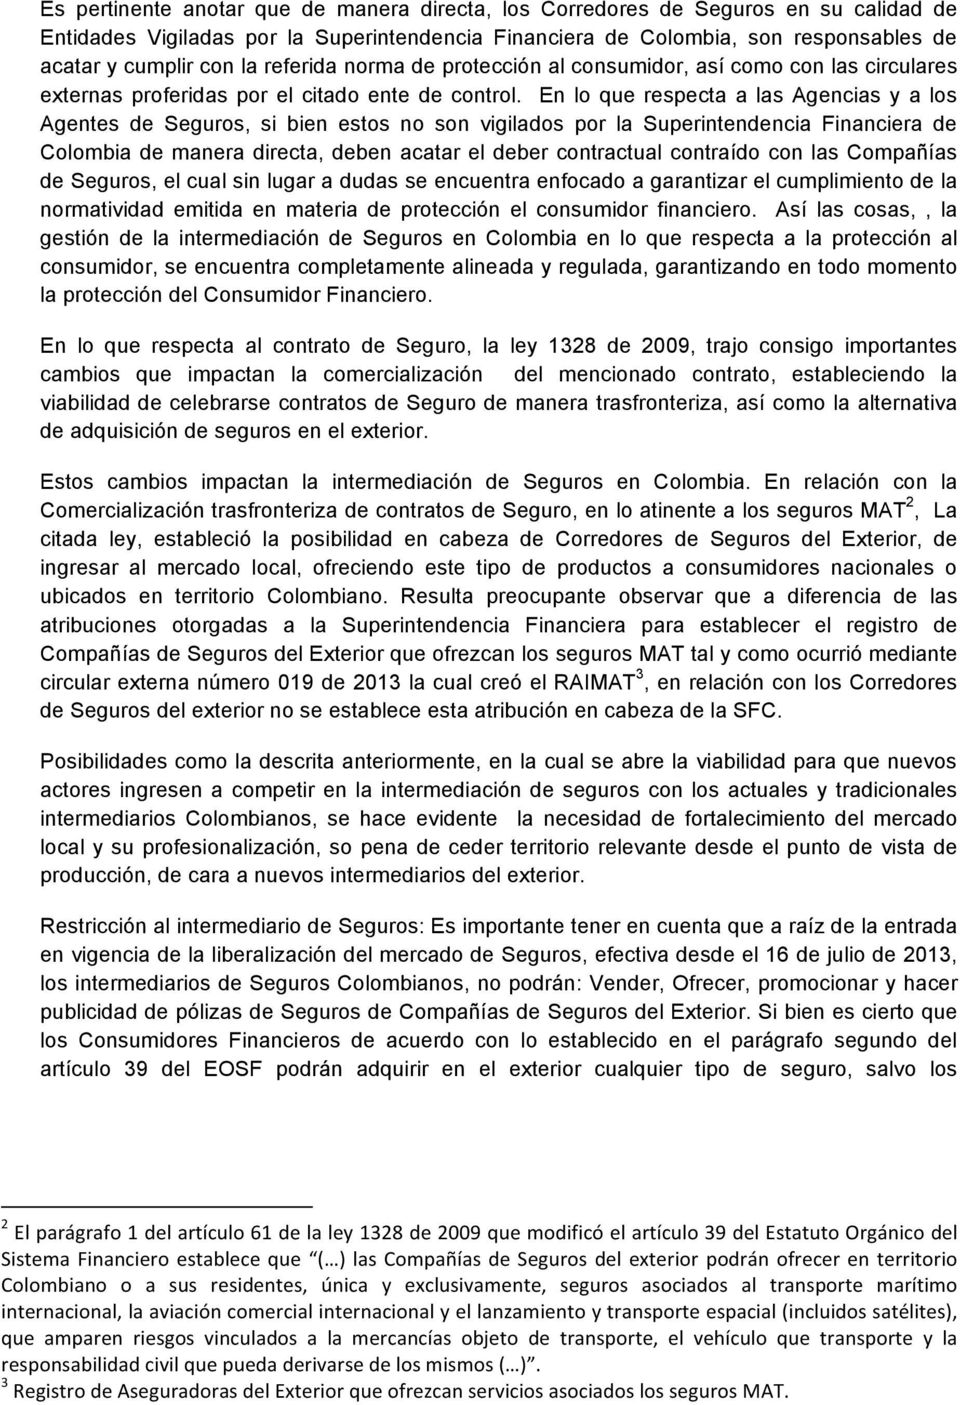 En lo que respecta a las Agencias y a los Agentes de Seguros, si bien estos no son vigilados por la Superintendencia Financiera de Colombia de manera directa, deben acatar el deber contractual